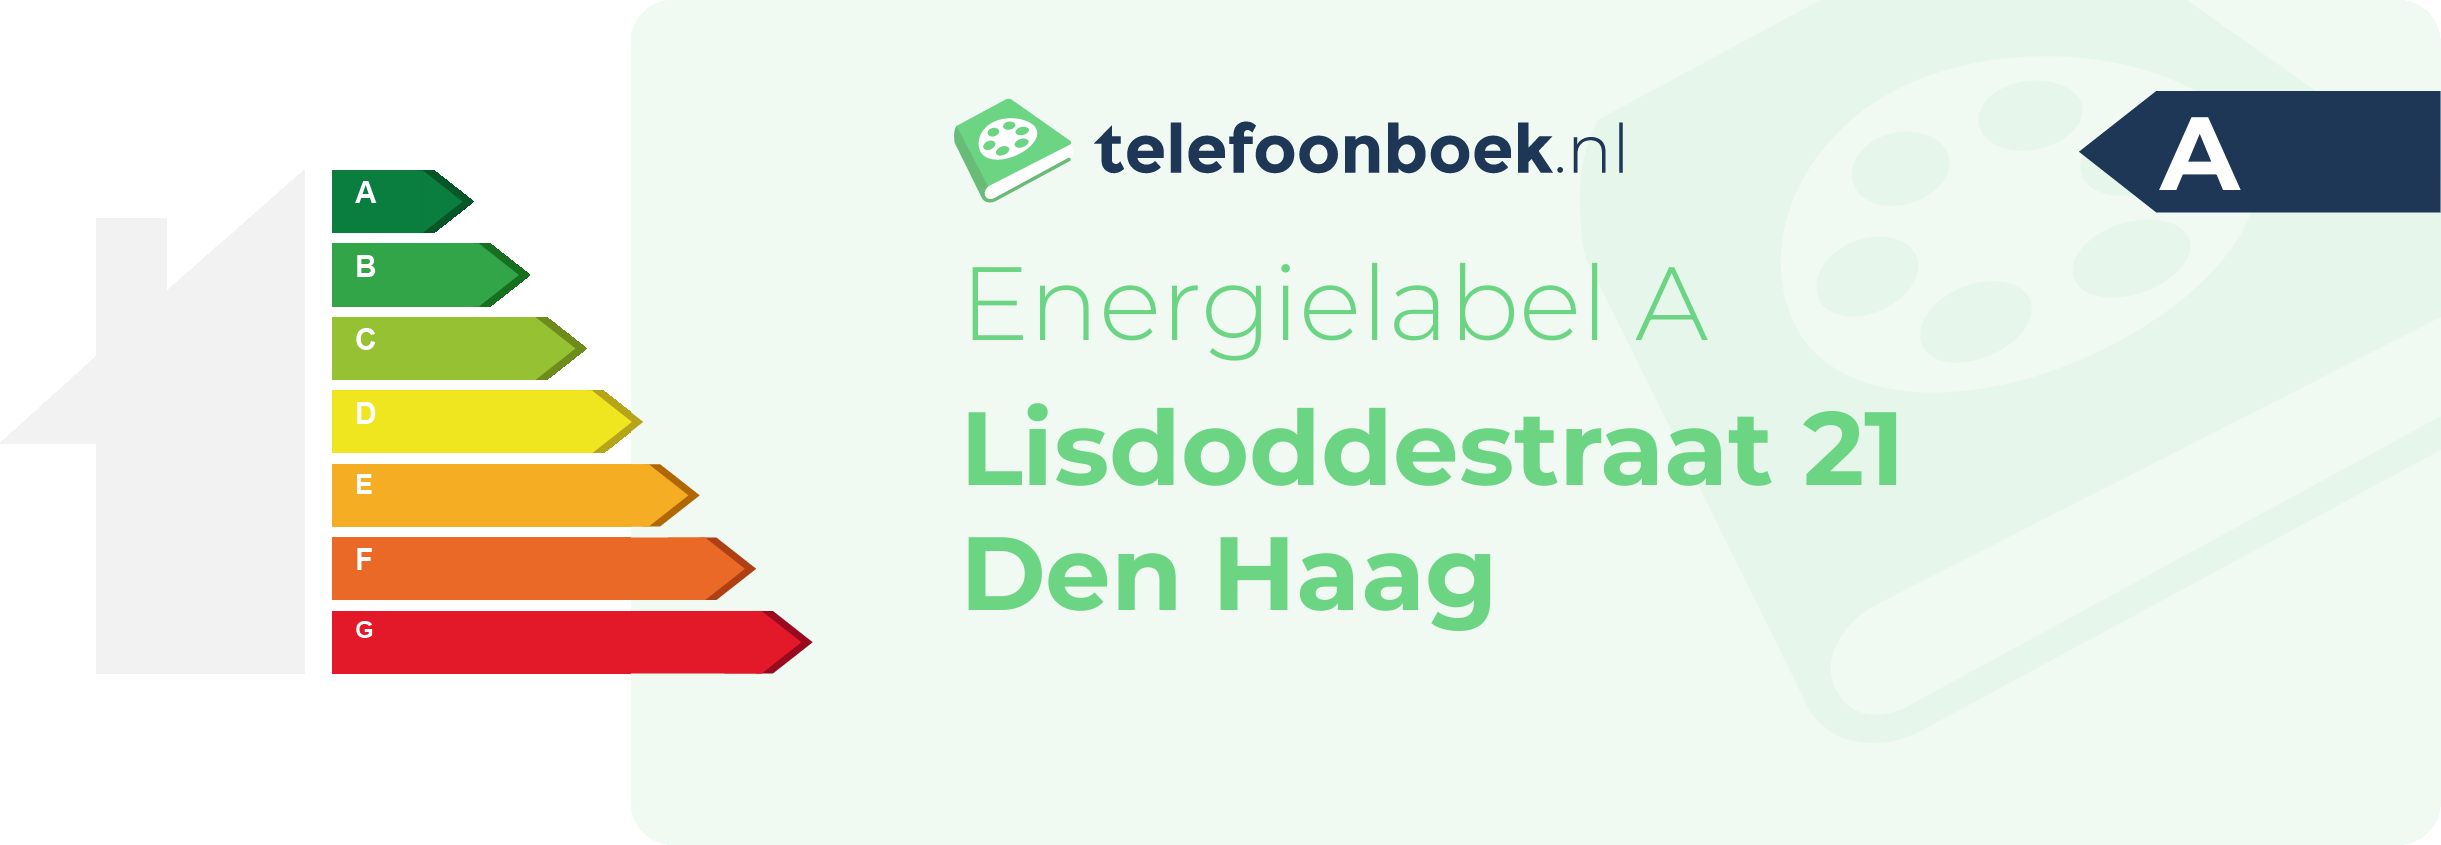 Energielabel Lisdoddestraat 21 Den Haag